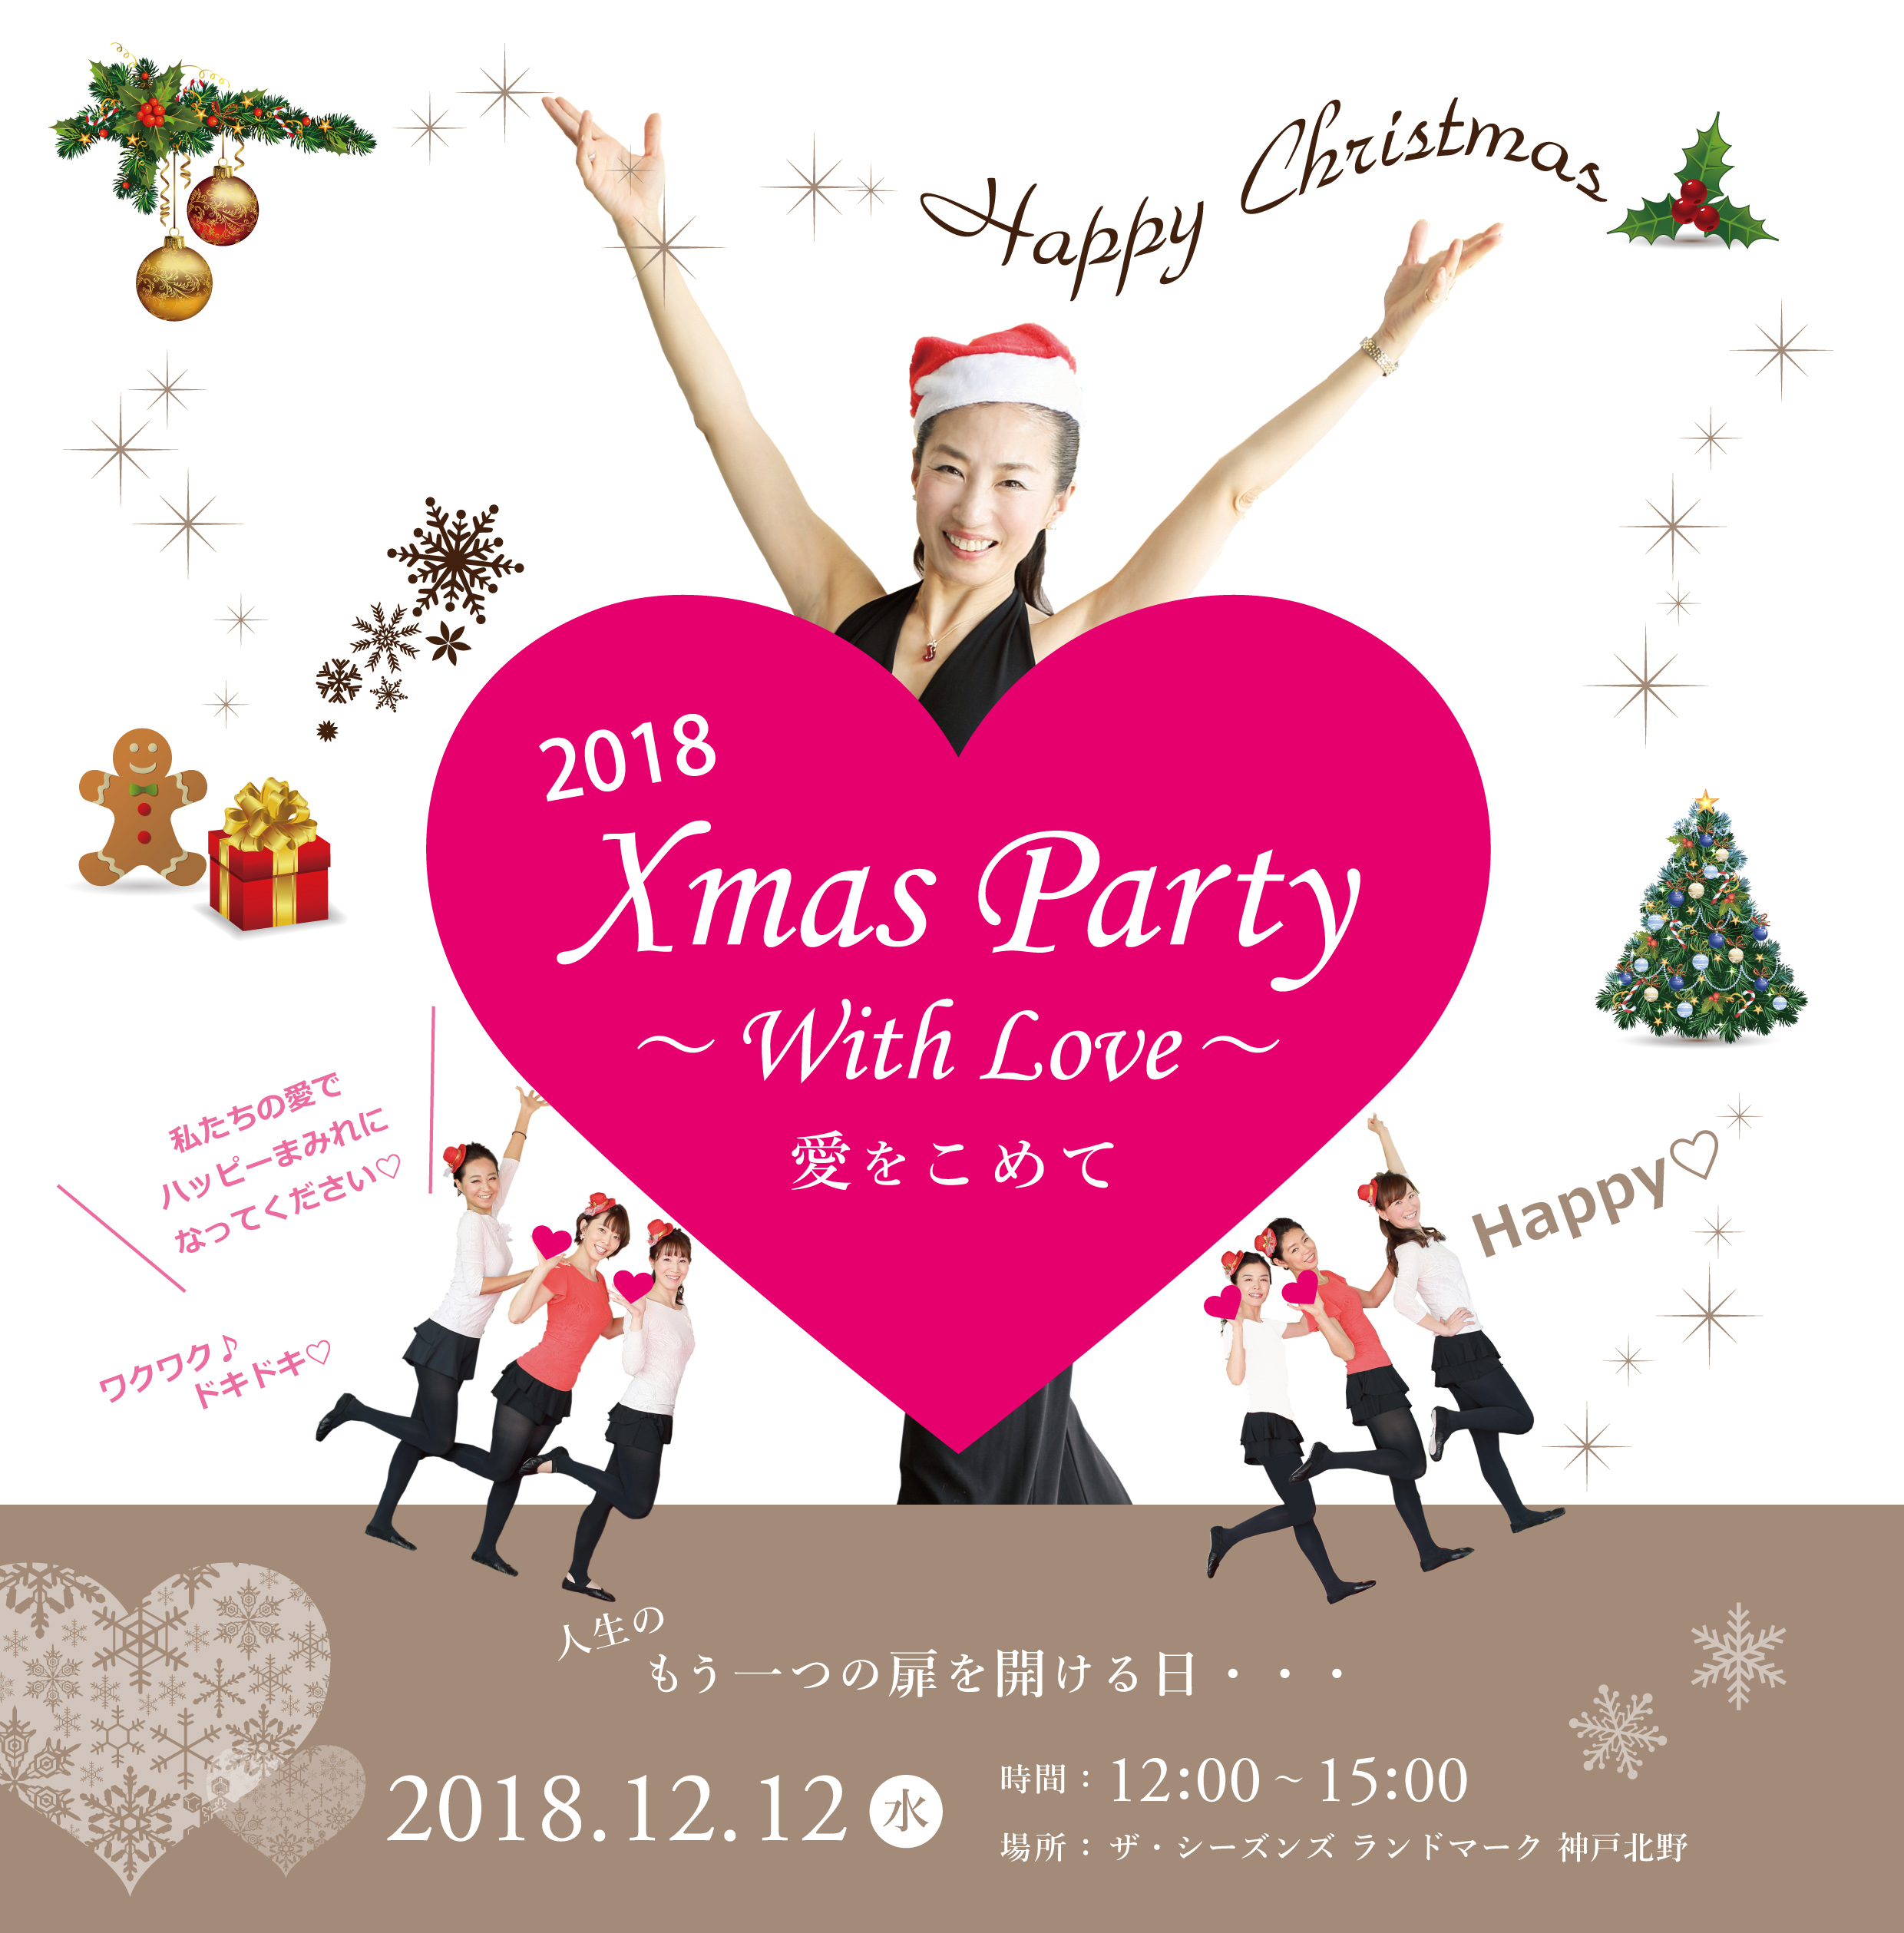 ♪愛がいっぱい♪2018クリスマスパーティーWith Love〜♪